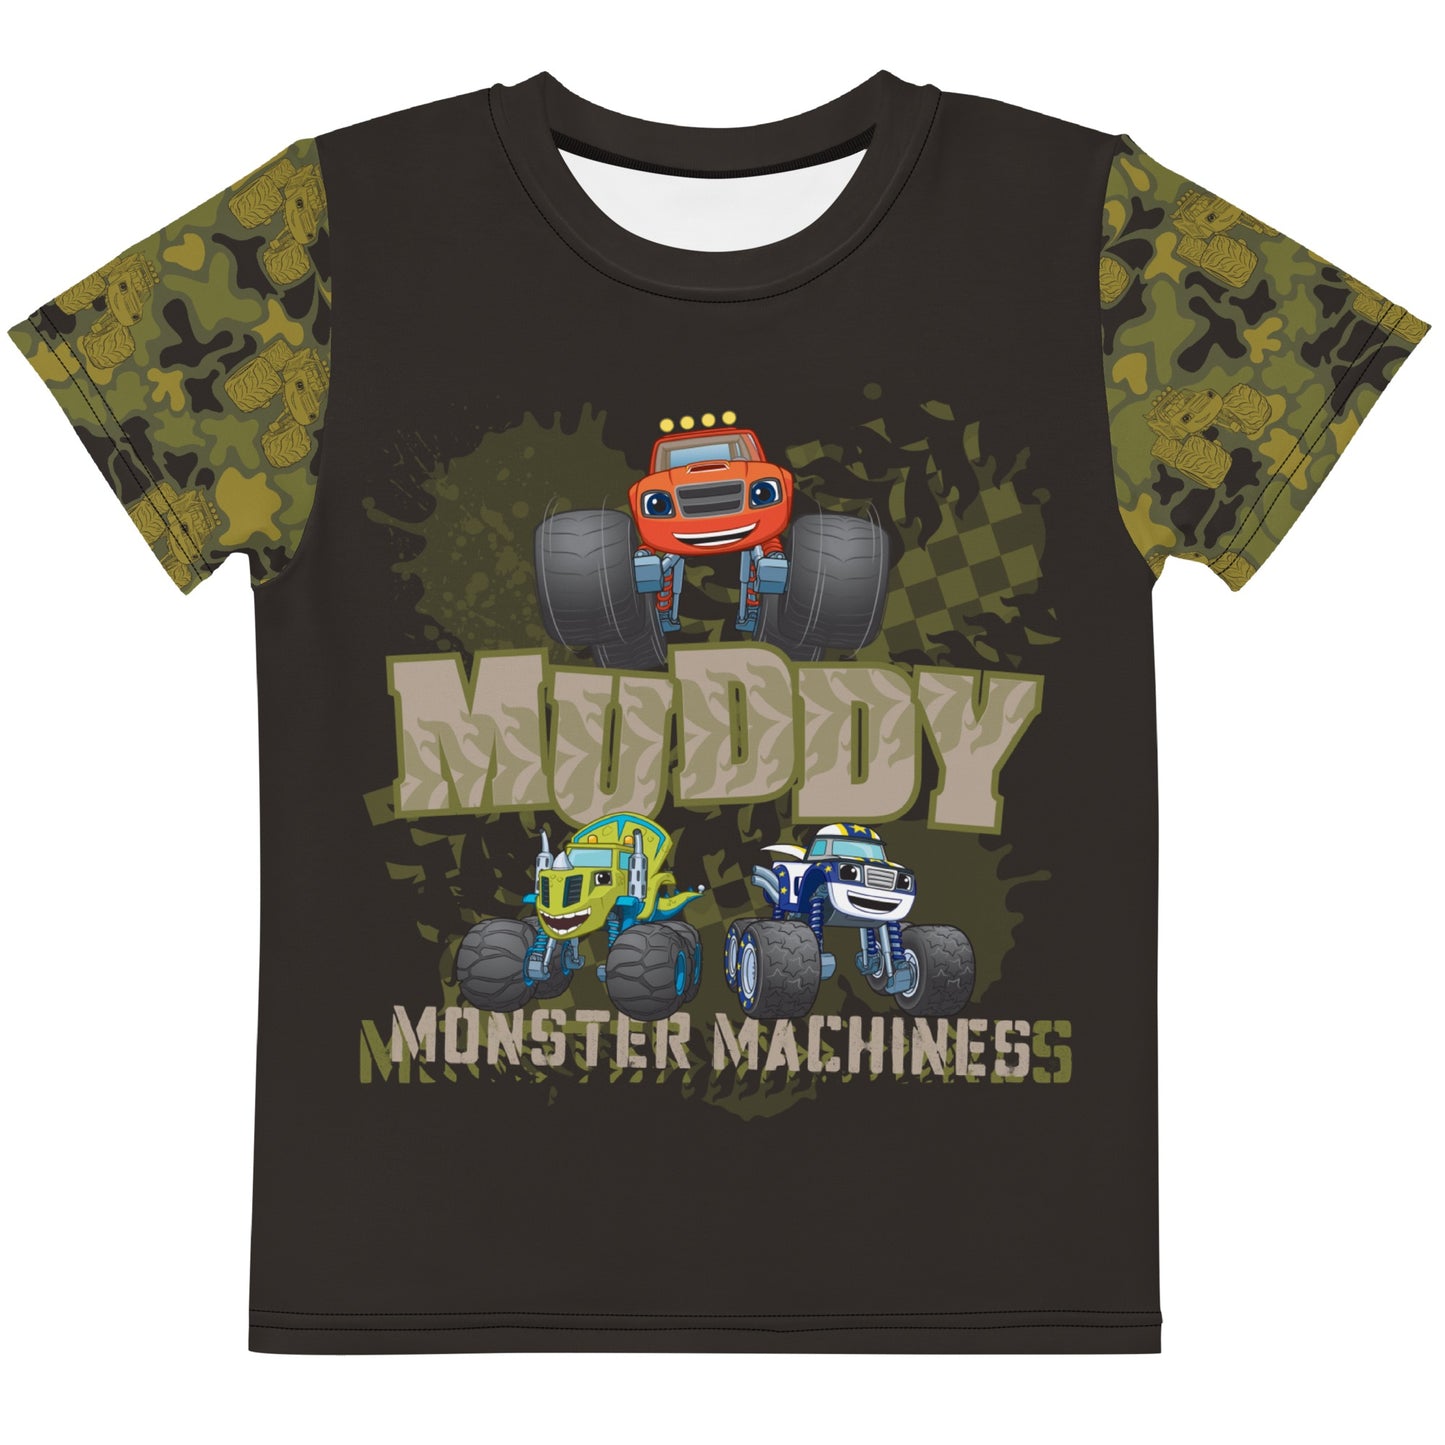 Blaze & The Monster Machines Muddy Monster Machine Kids T-Shirt